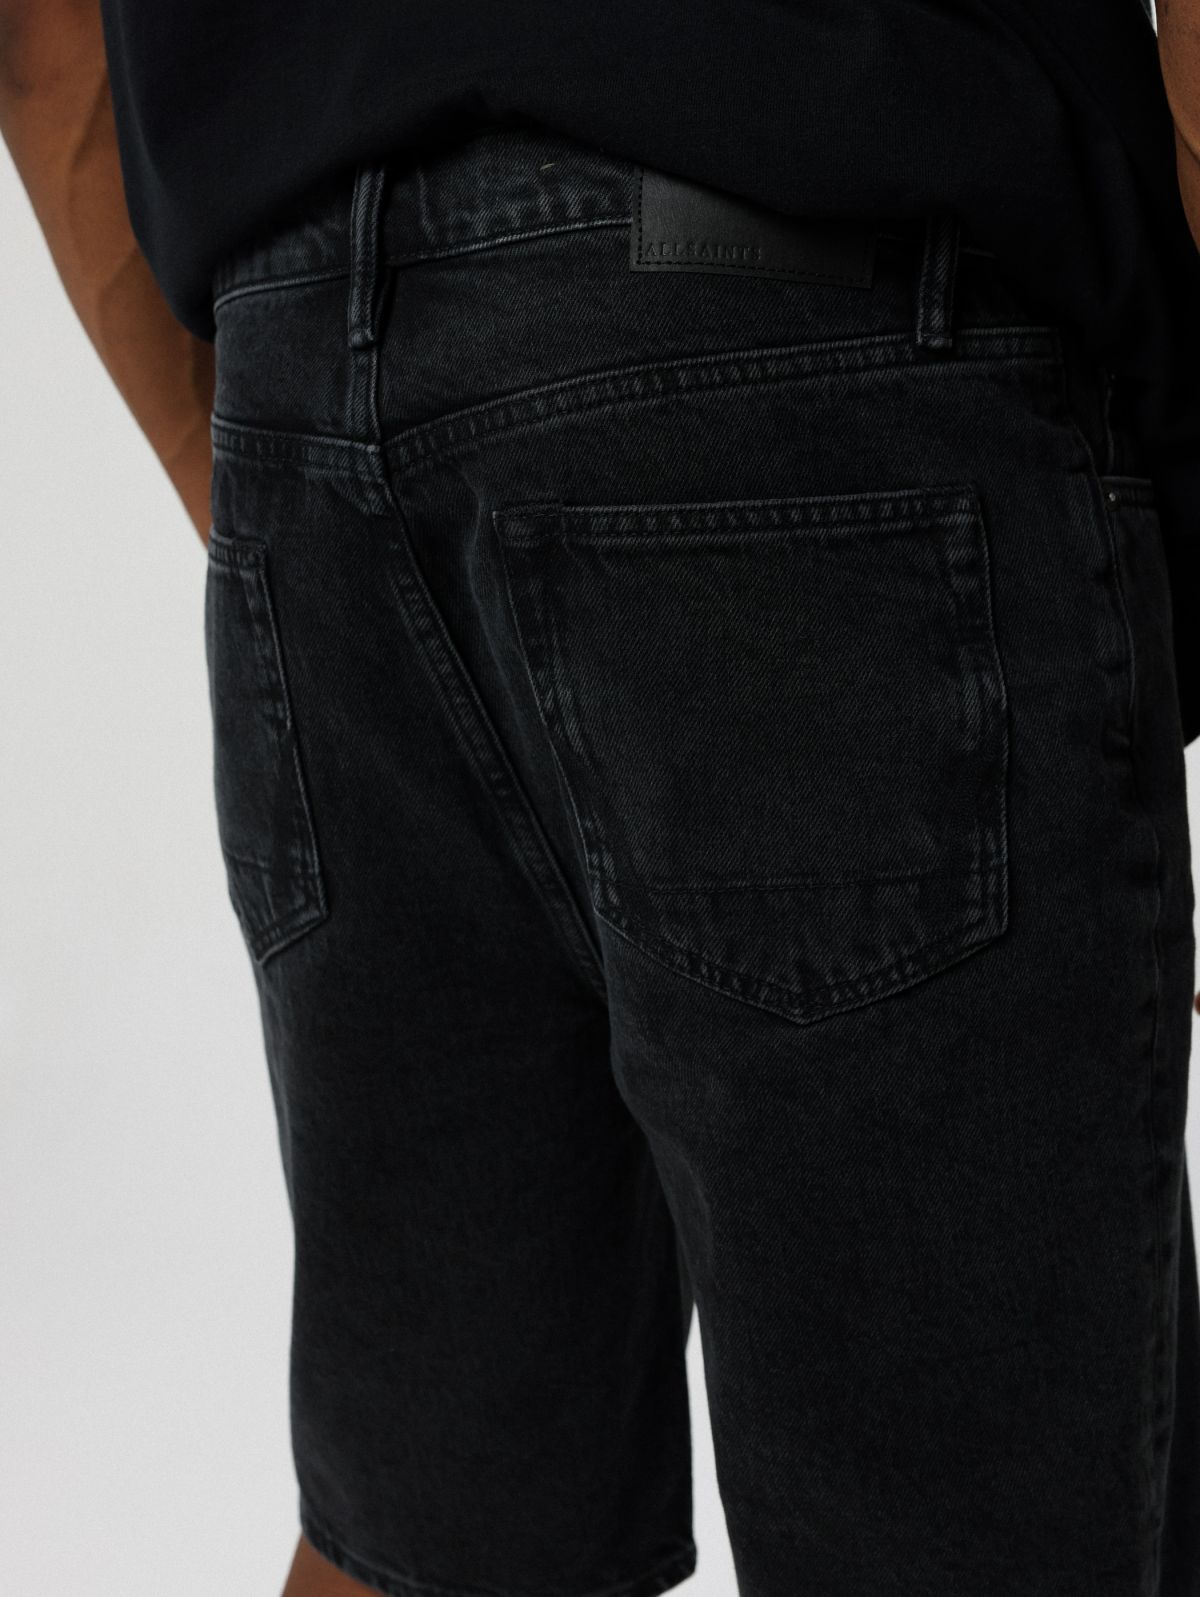  ג'ינס קצר בגזרה ישרה של ALL SAINTS